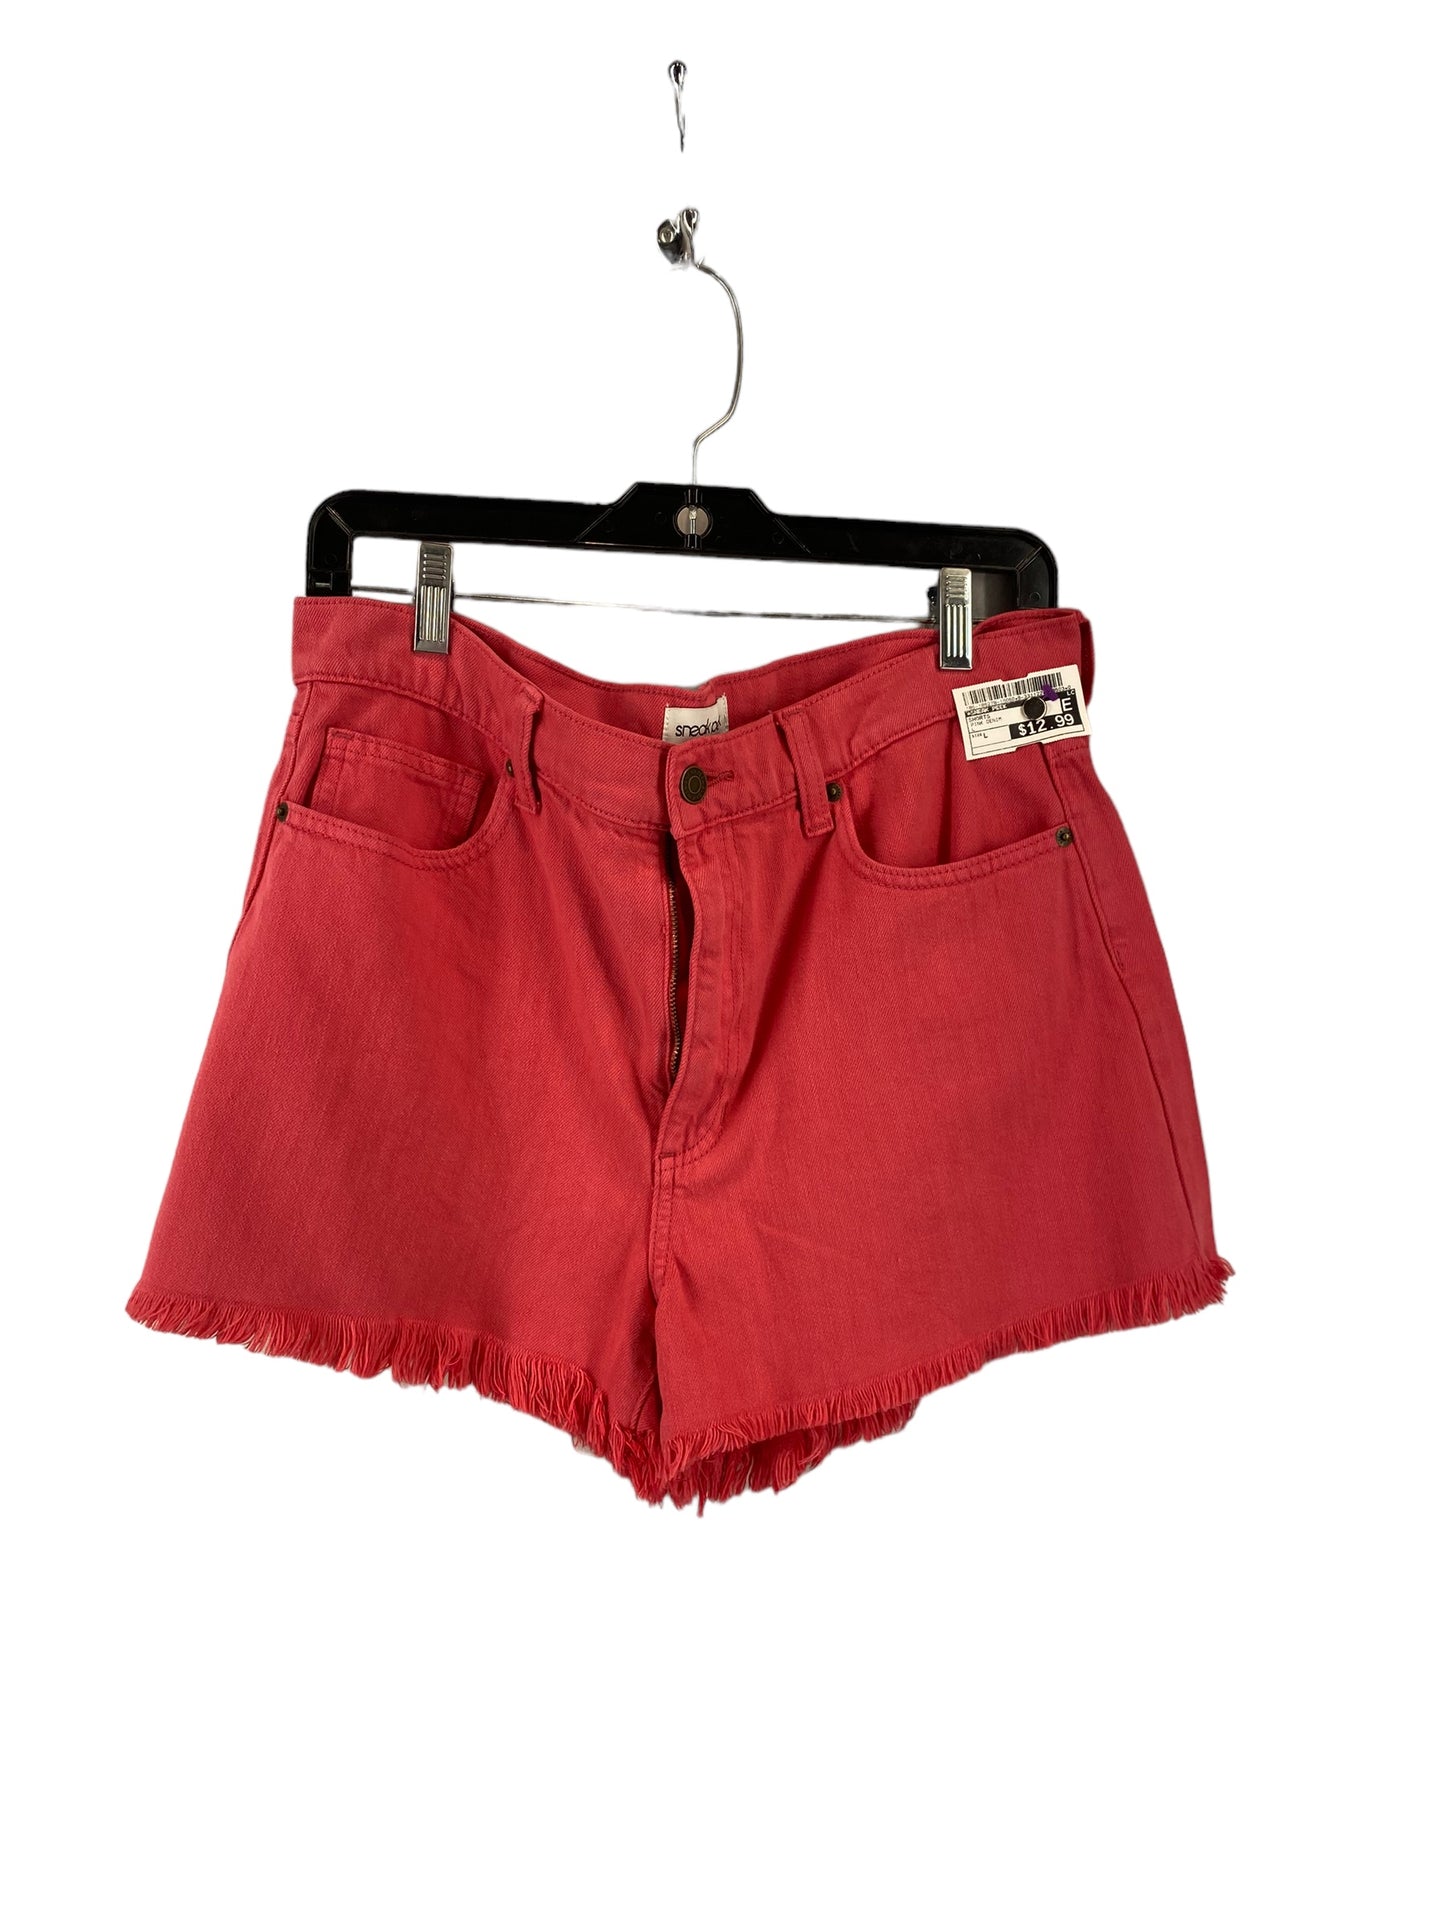 Shorts By Sneak Peek  Size: L